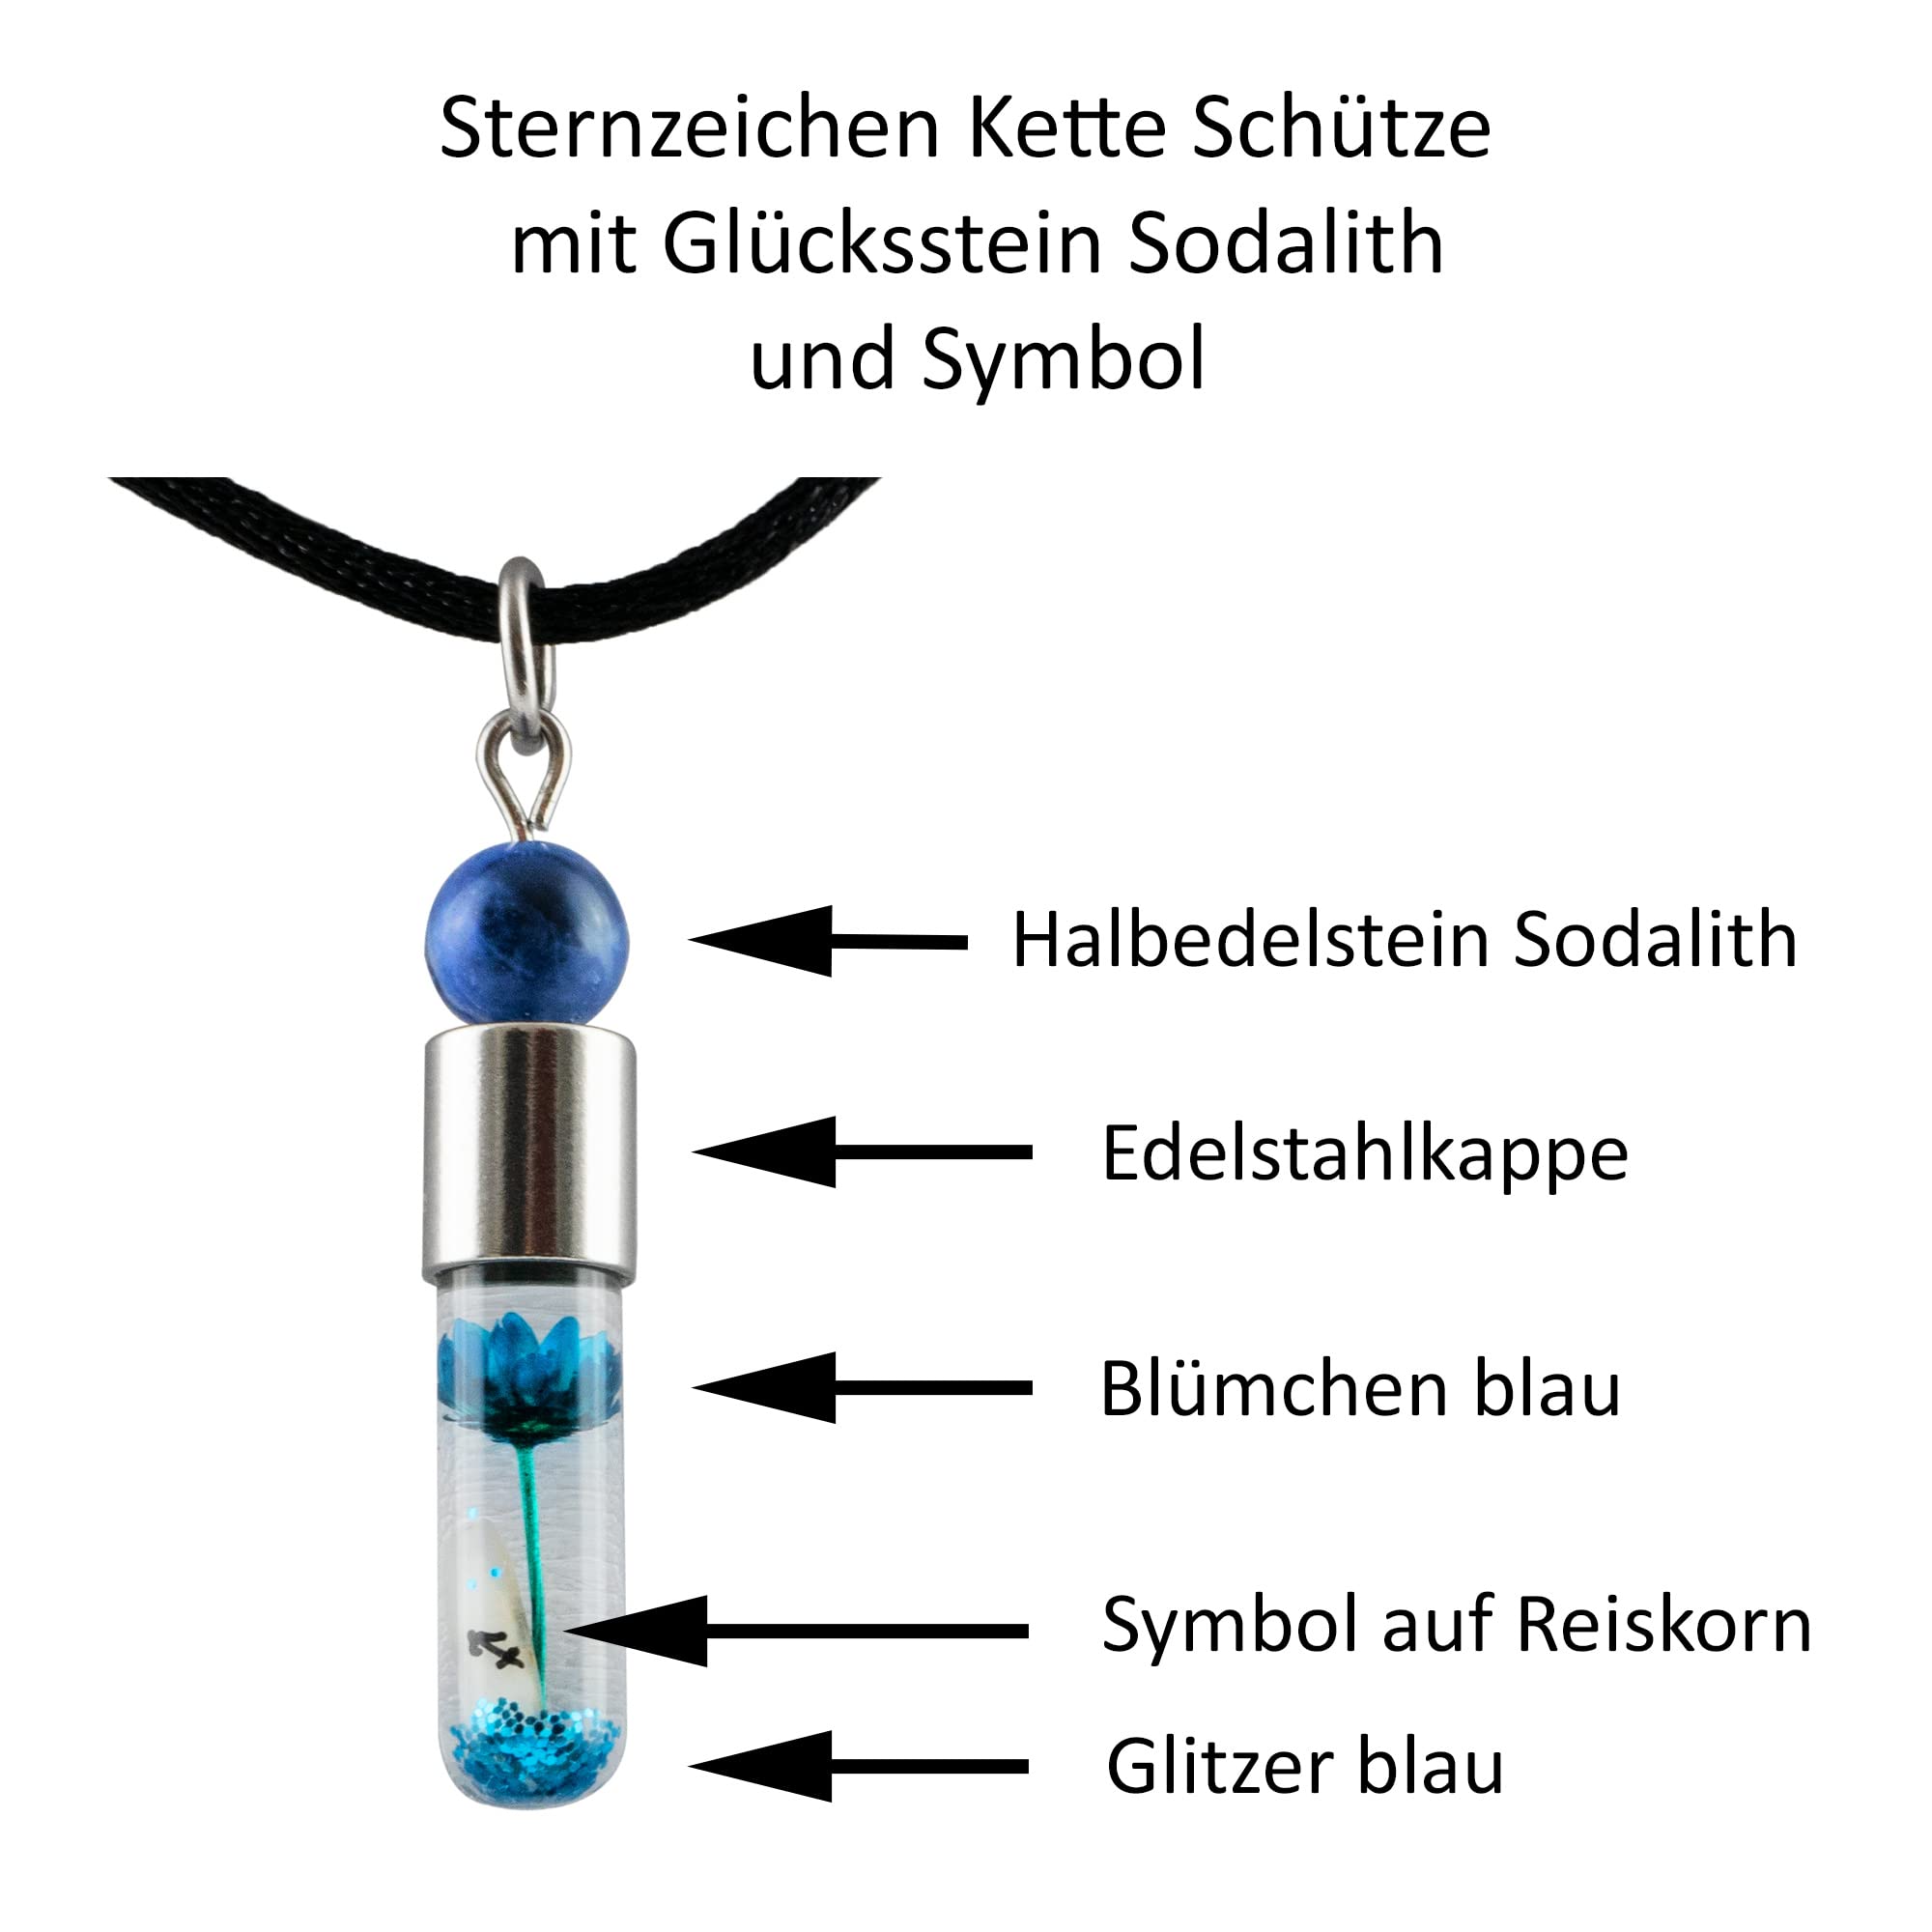 Sternzeichen Schütze, 23. November - 21. Dezember, Halskette mit Glückstein Sodalith und Sternzeichensymbol - 0